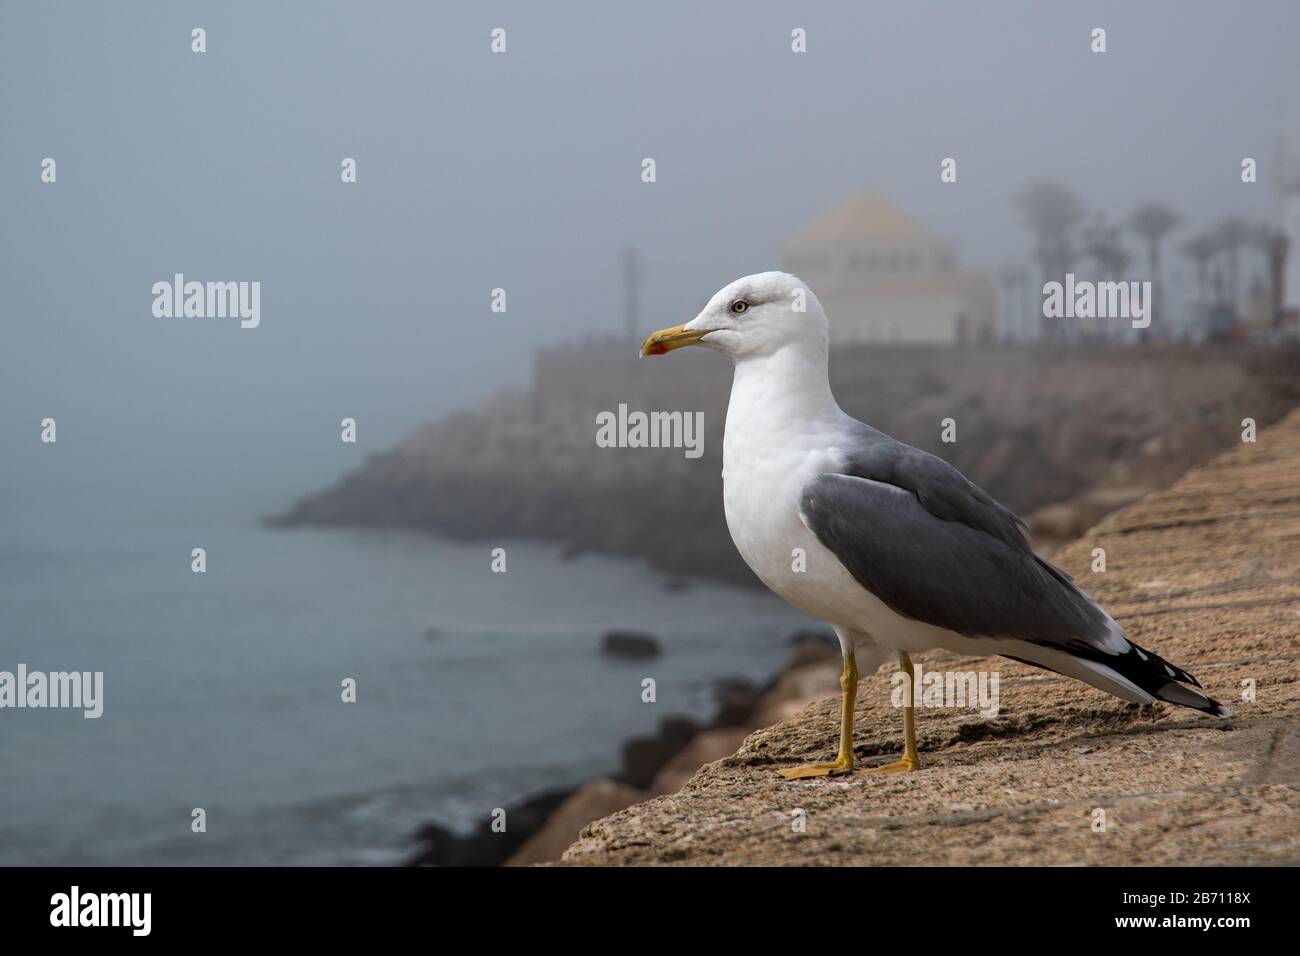 Seagull on the promenade in Cadiz Stock Photo